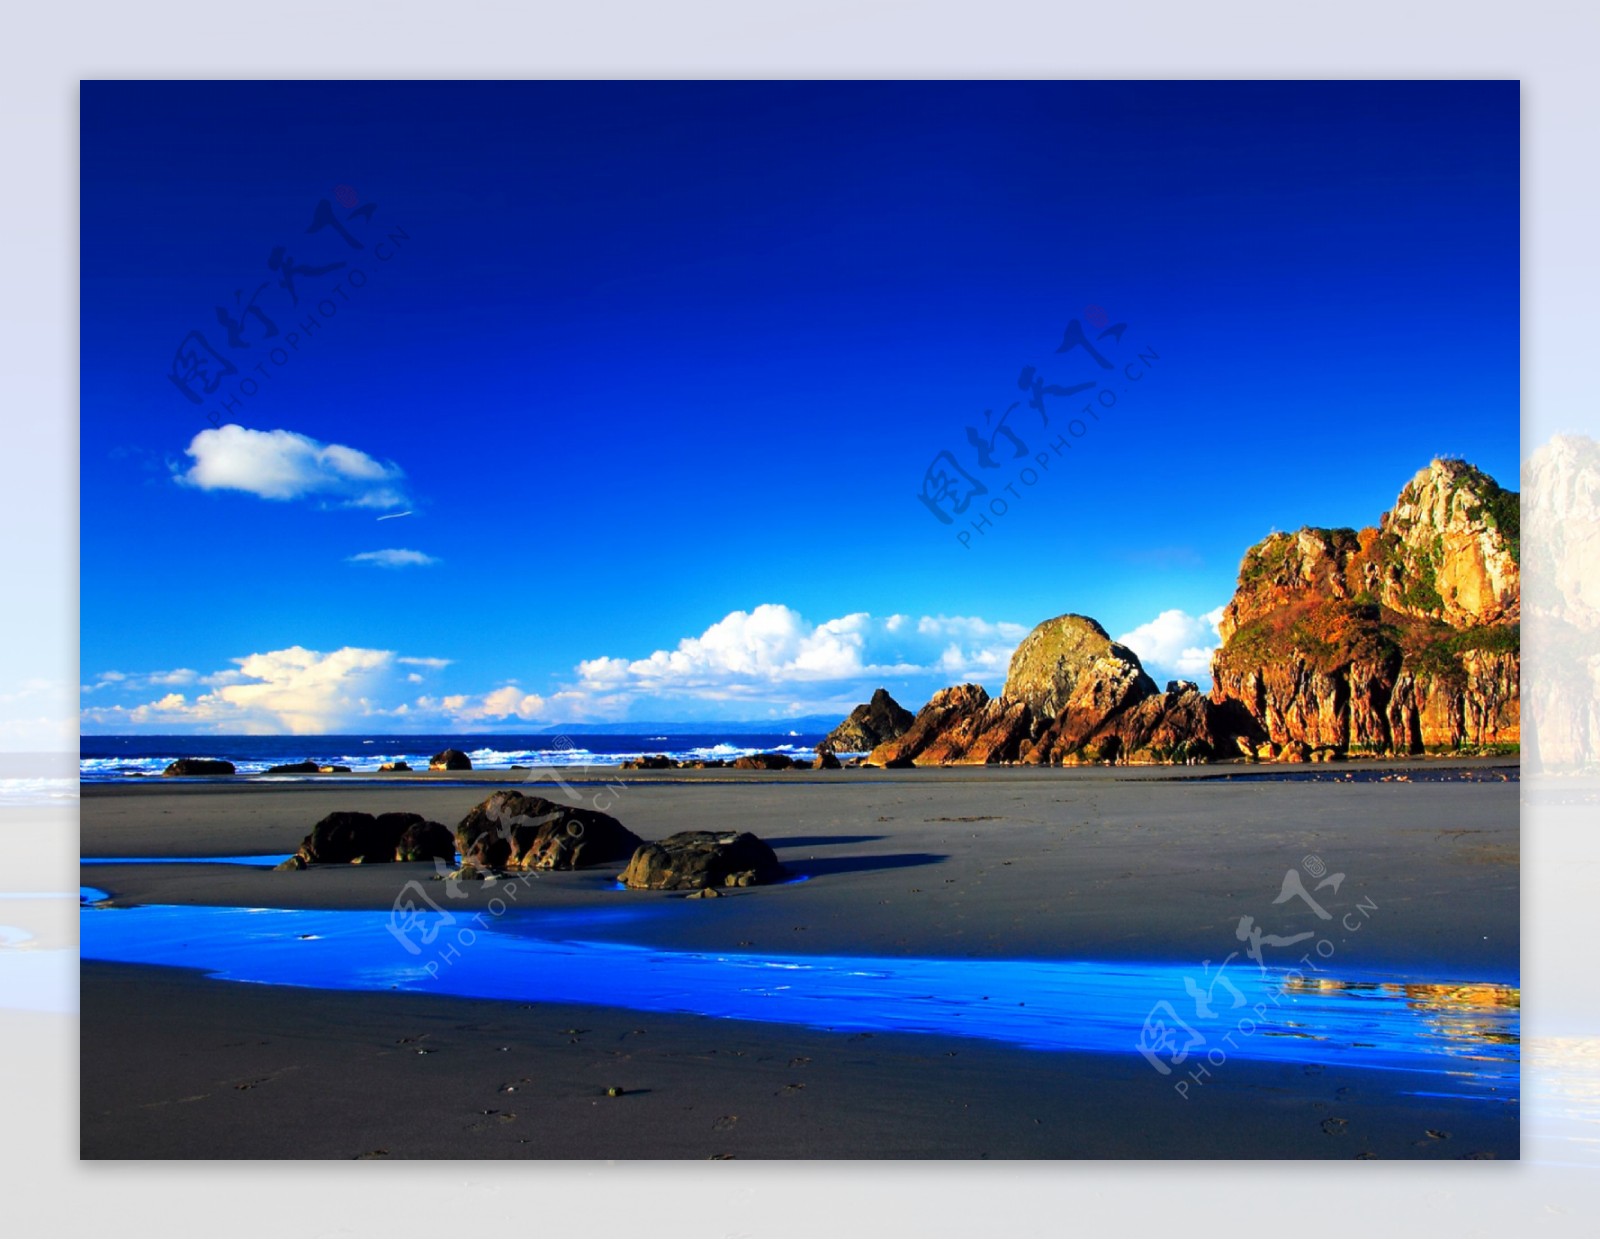 蓝色海滩图片